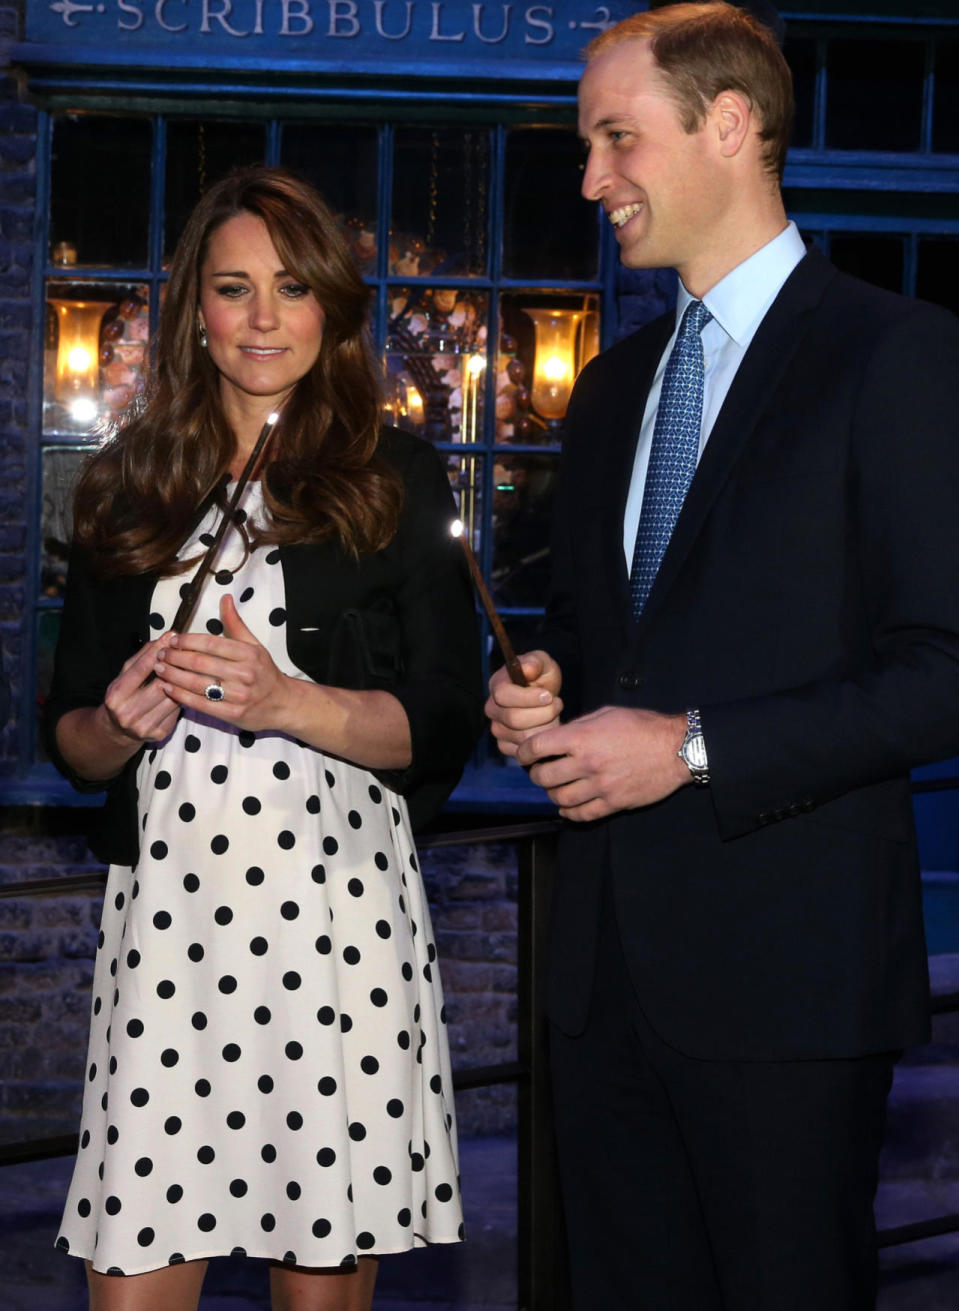 Wenn man ein schönes Umstandskleid findet, ist es egal von welcher Marke es ist. Als Herzogin Kate mit George schwanger war, überraschte sie mit einem verspielten Polka-Dots-Kleidchen von Topshop.